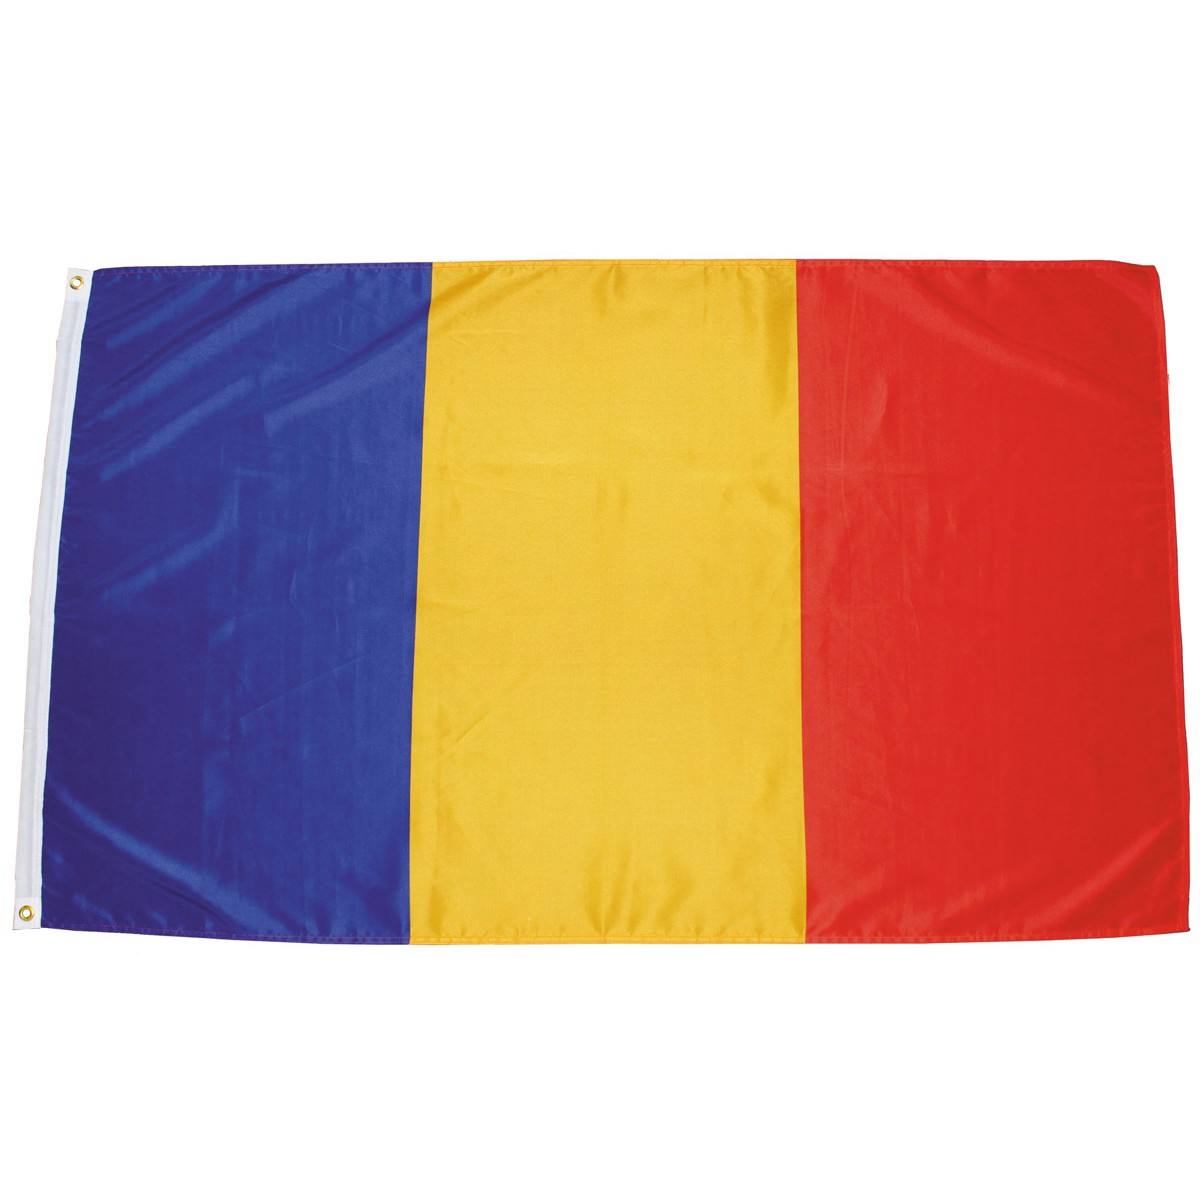 Rumunská vlajka 150x90cm obojstranná polyester megamix.shop